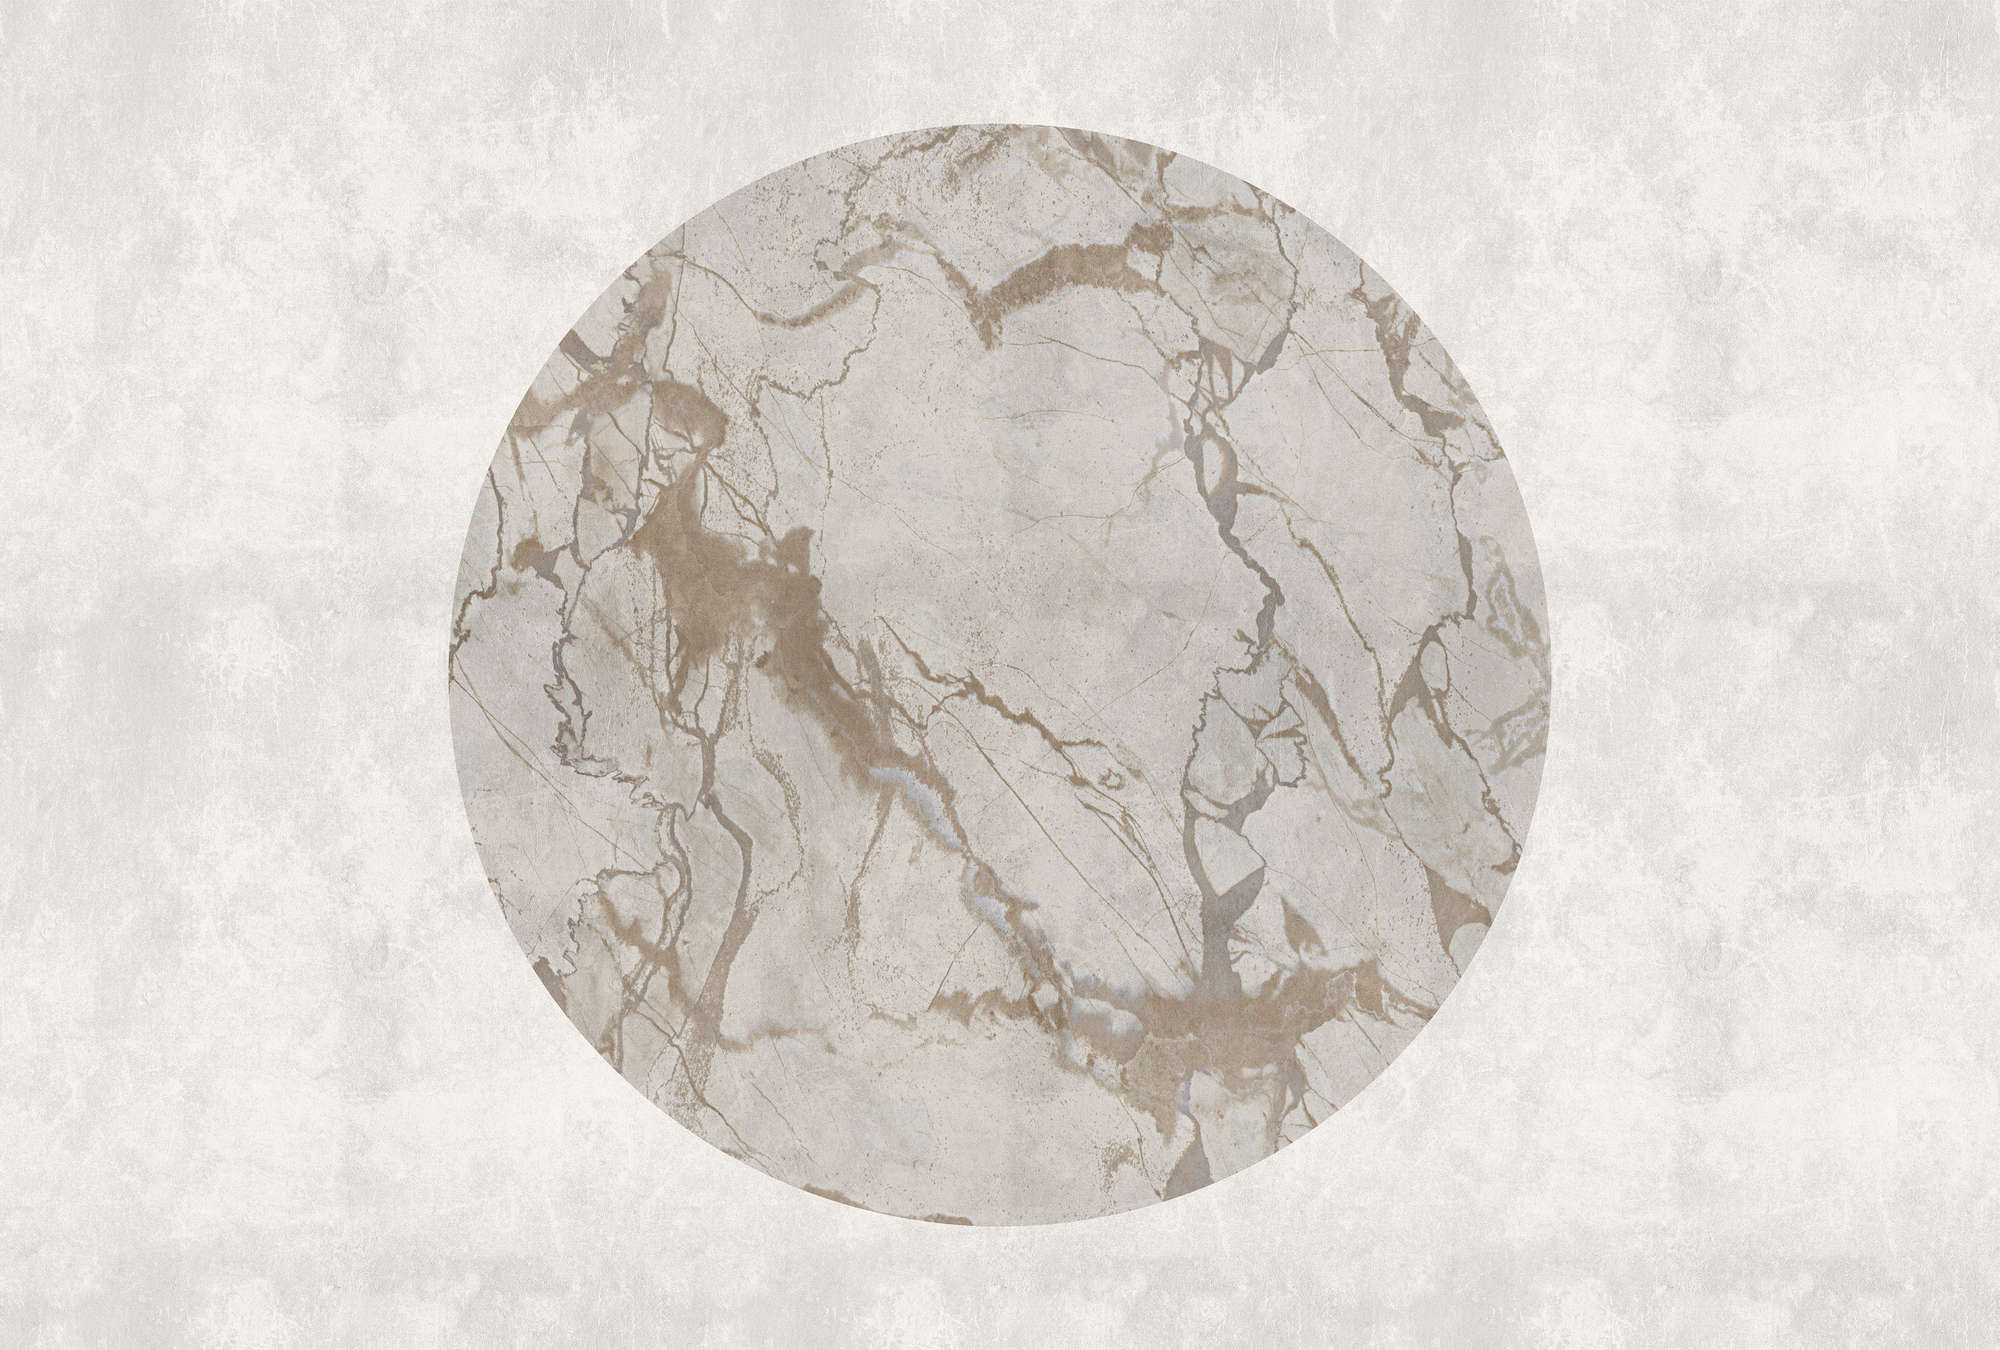             Mercurio 2 - Fotomurali effetto pietra greca con effetto marmo
        